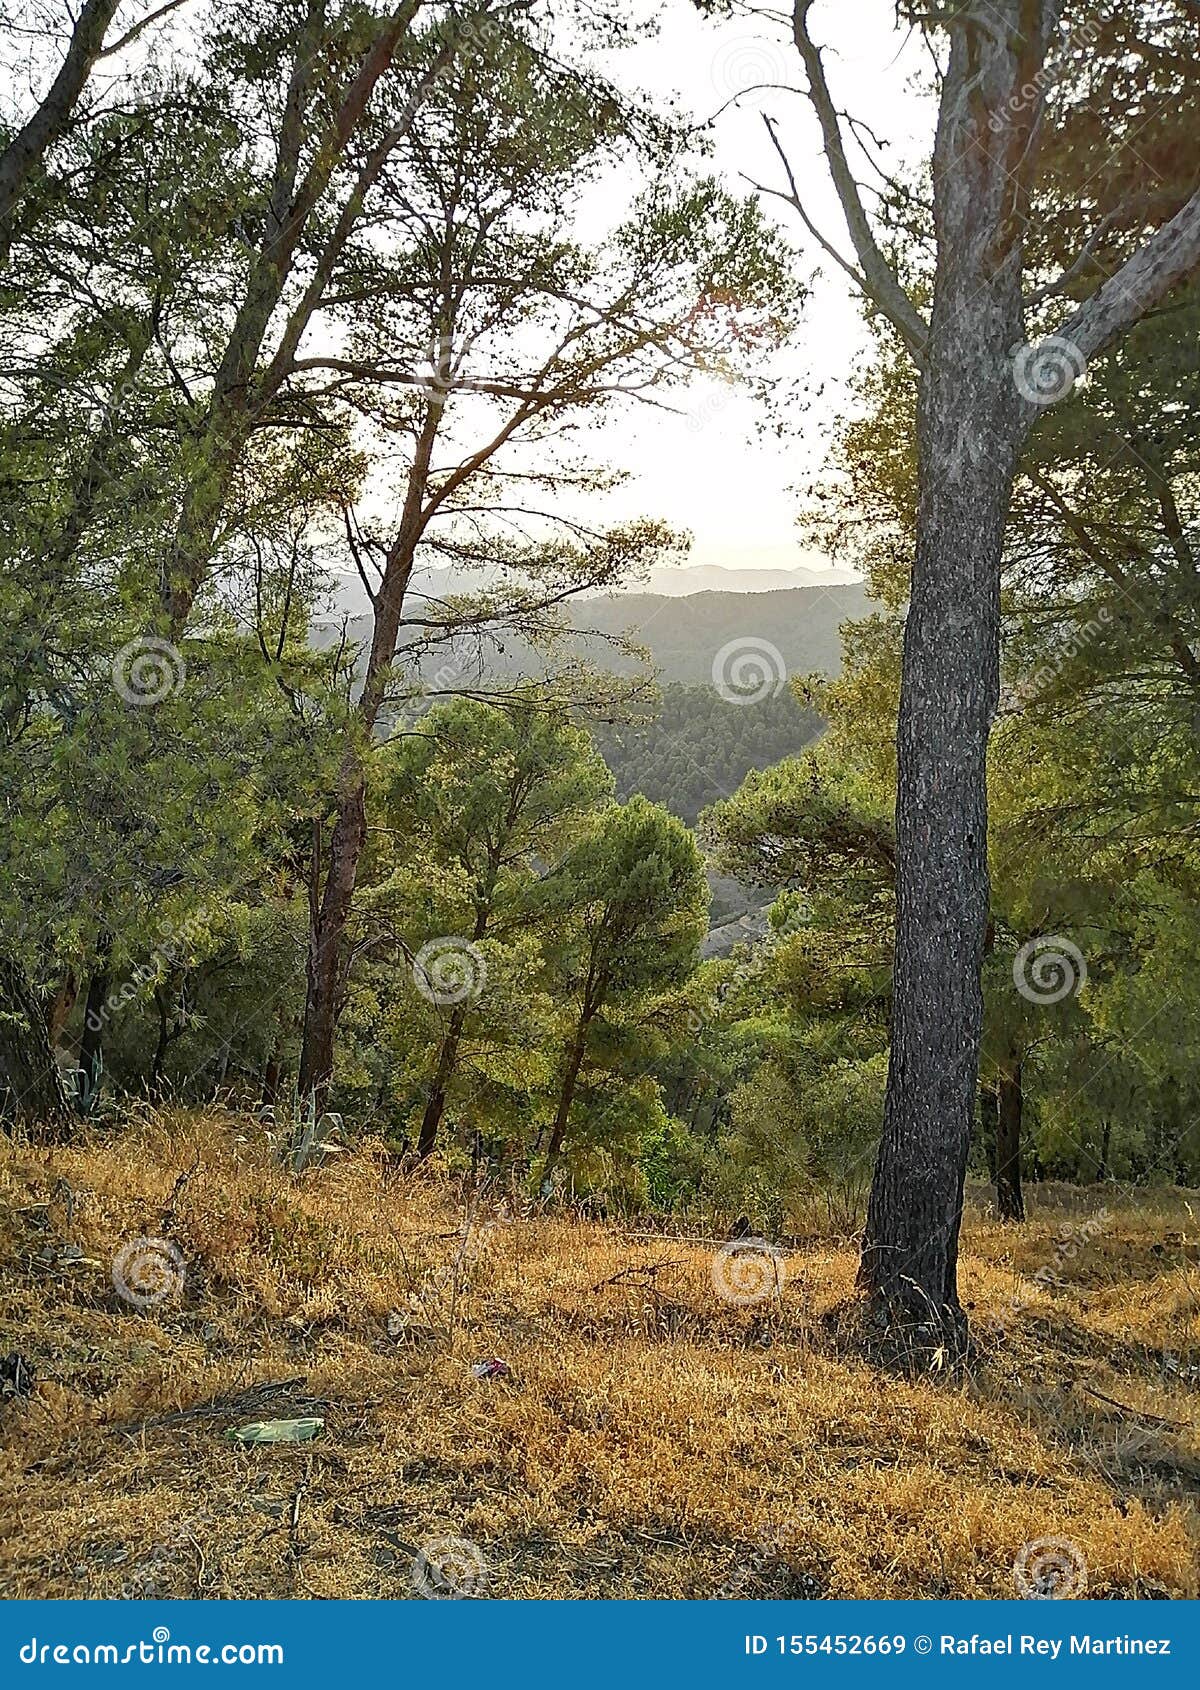 natural park-montes de malaga